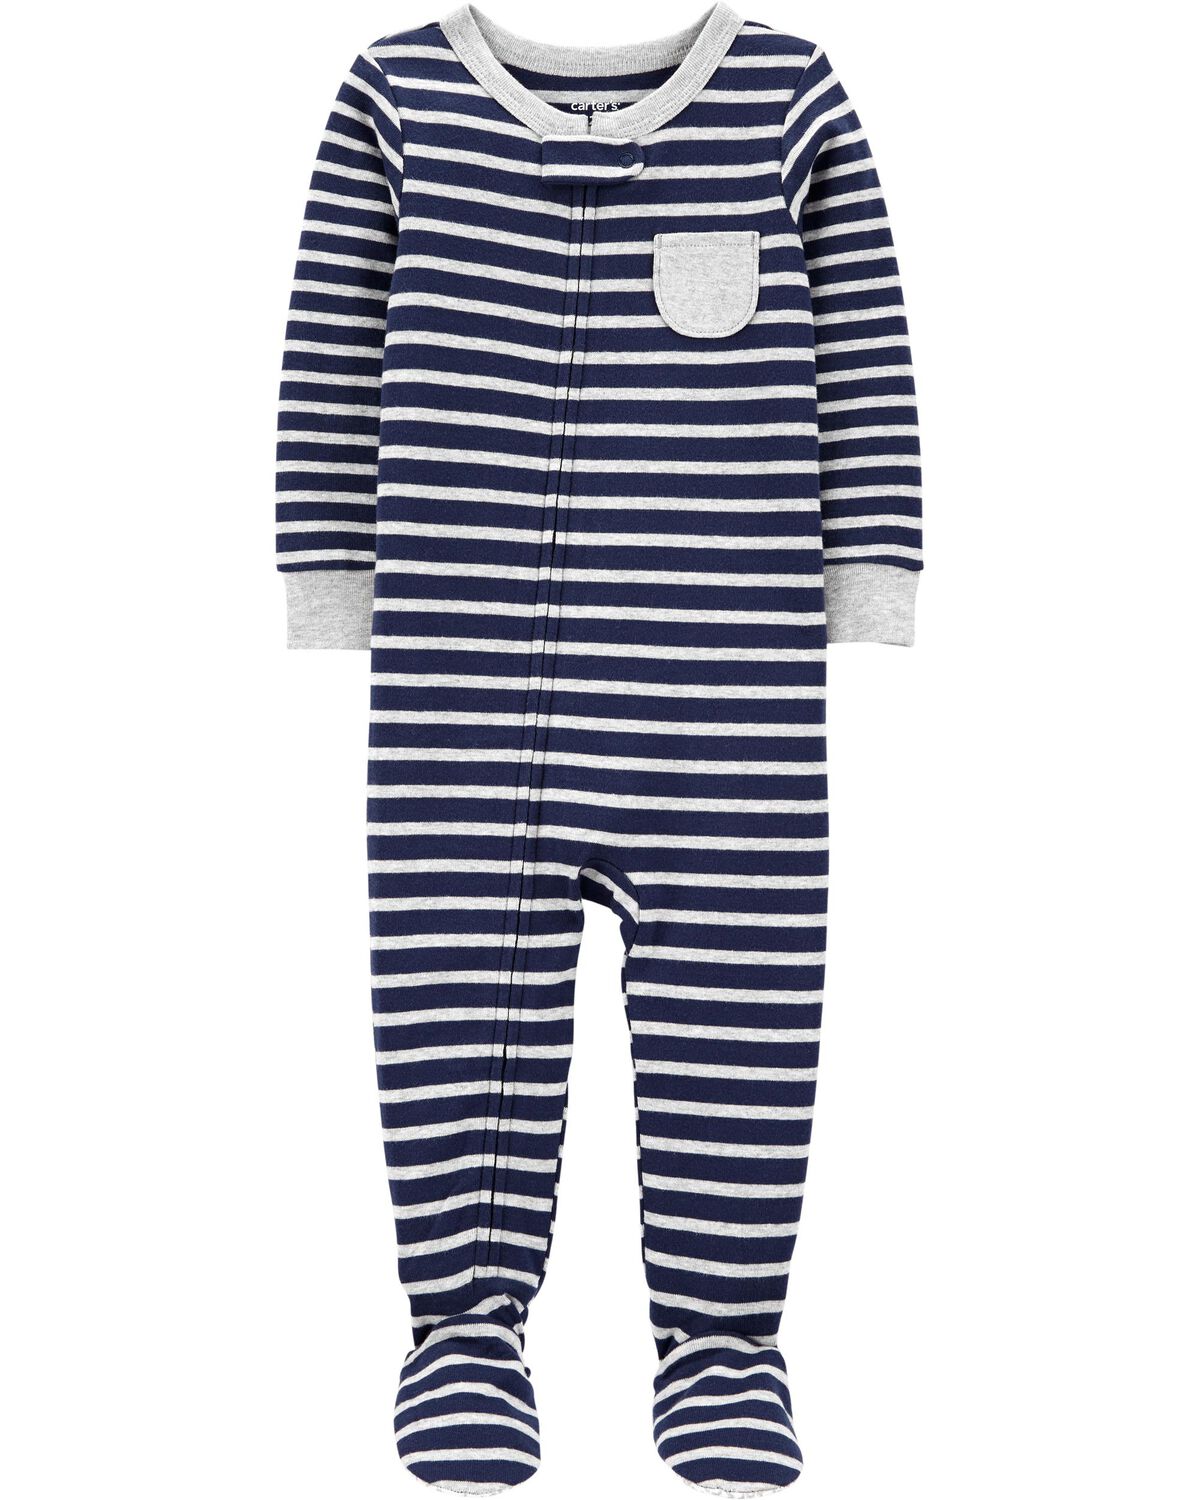 Toddler 1-Piece Striped Snug Fit Cotton Footie Pajamas